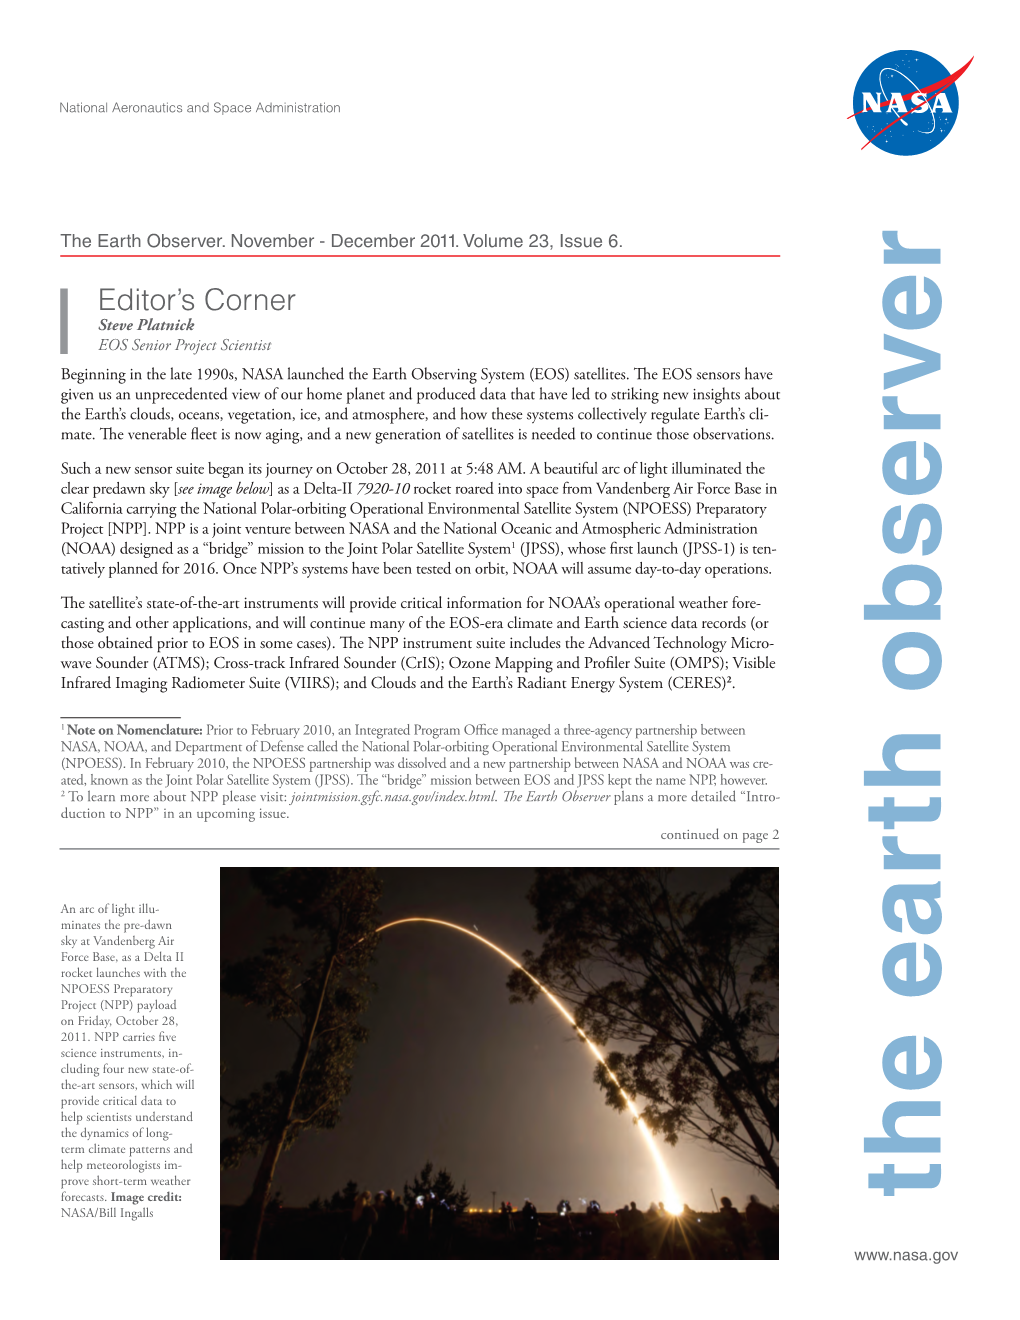 The Earth Observer November-December Volume 23, Issue 6